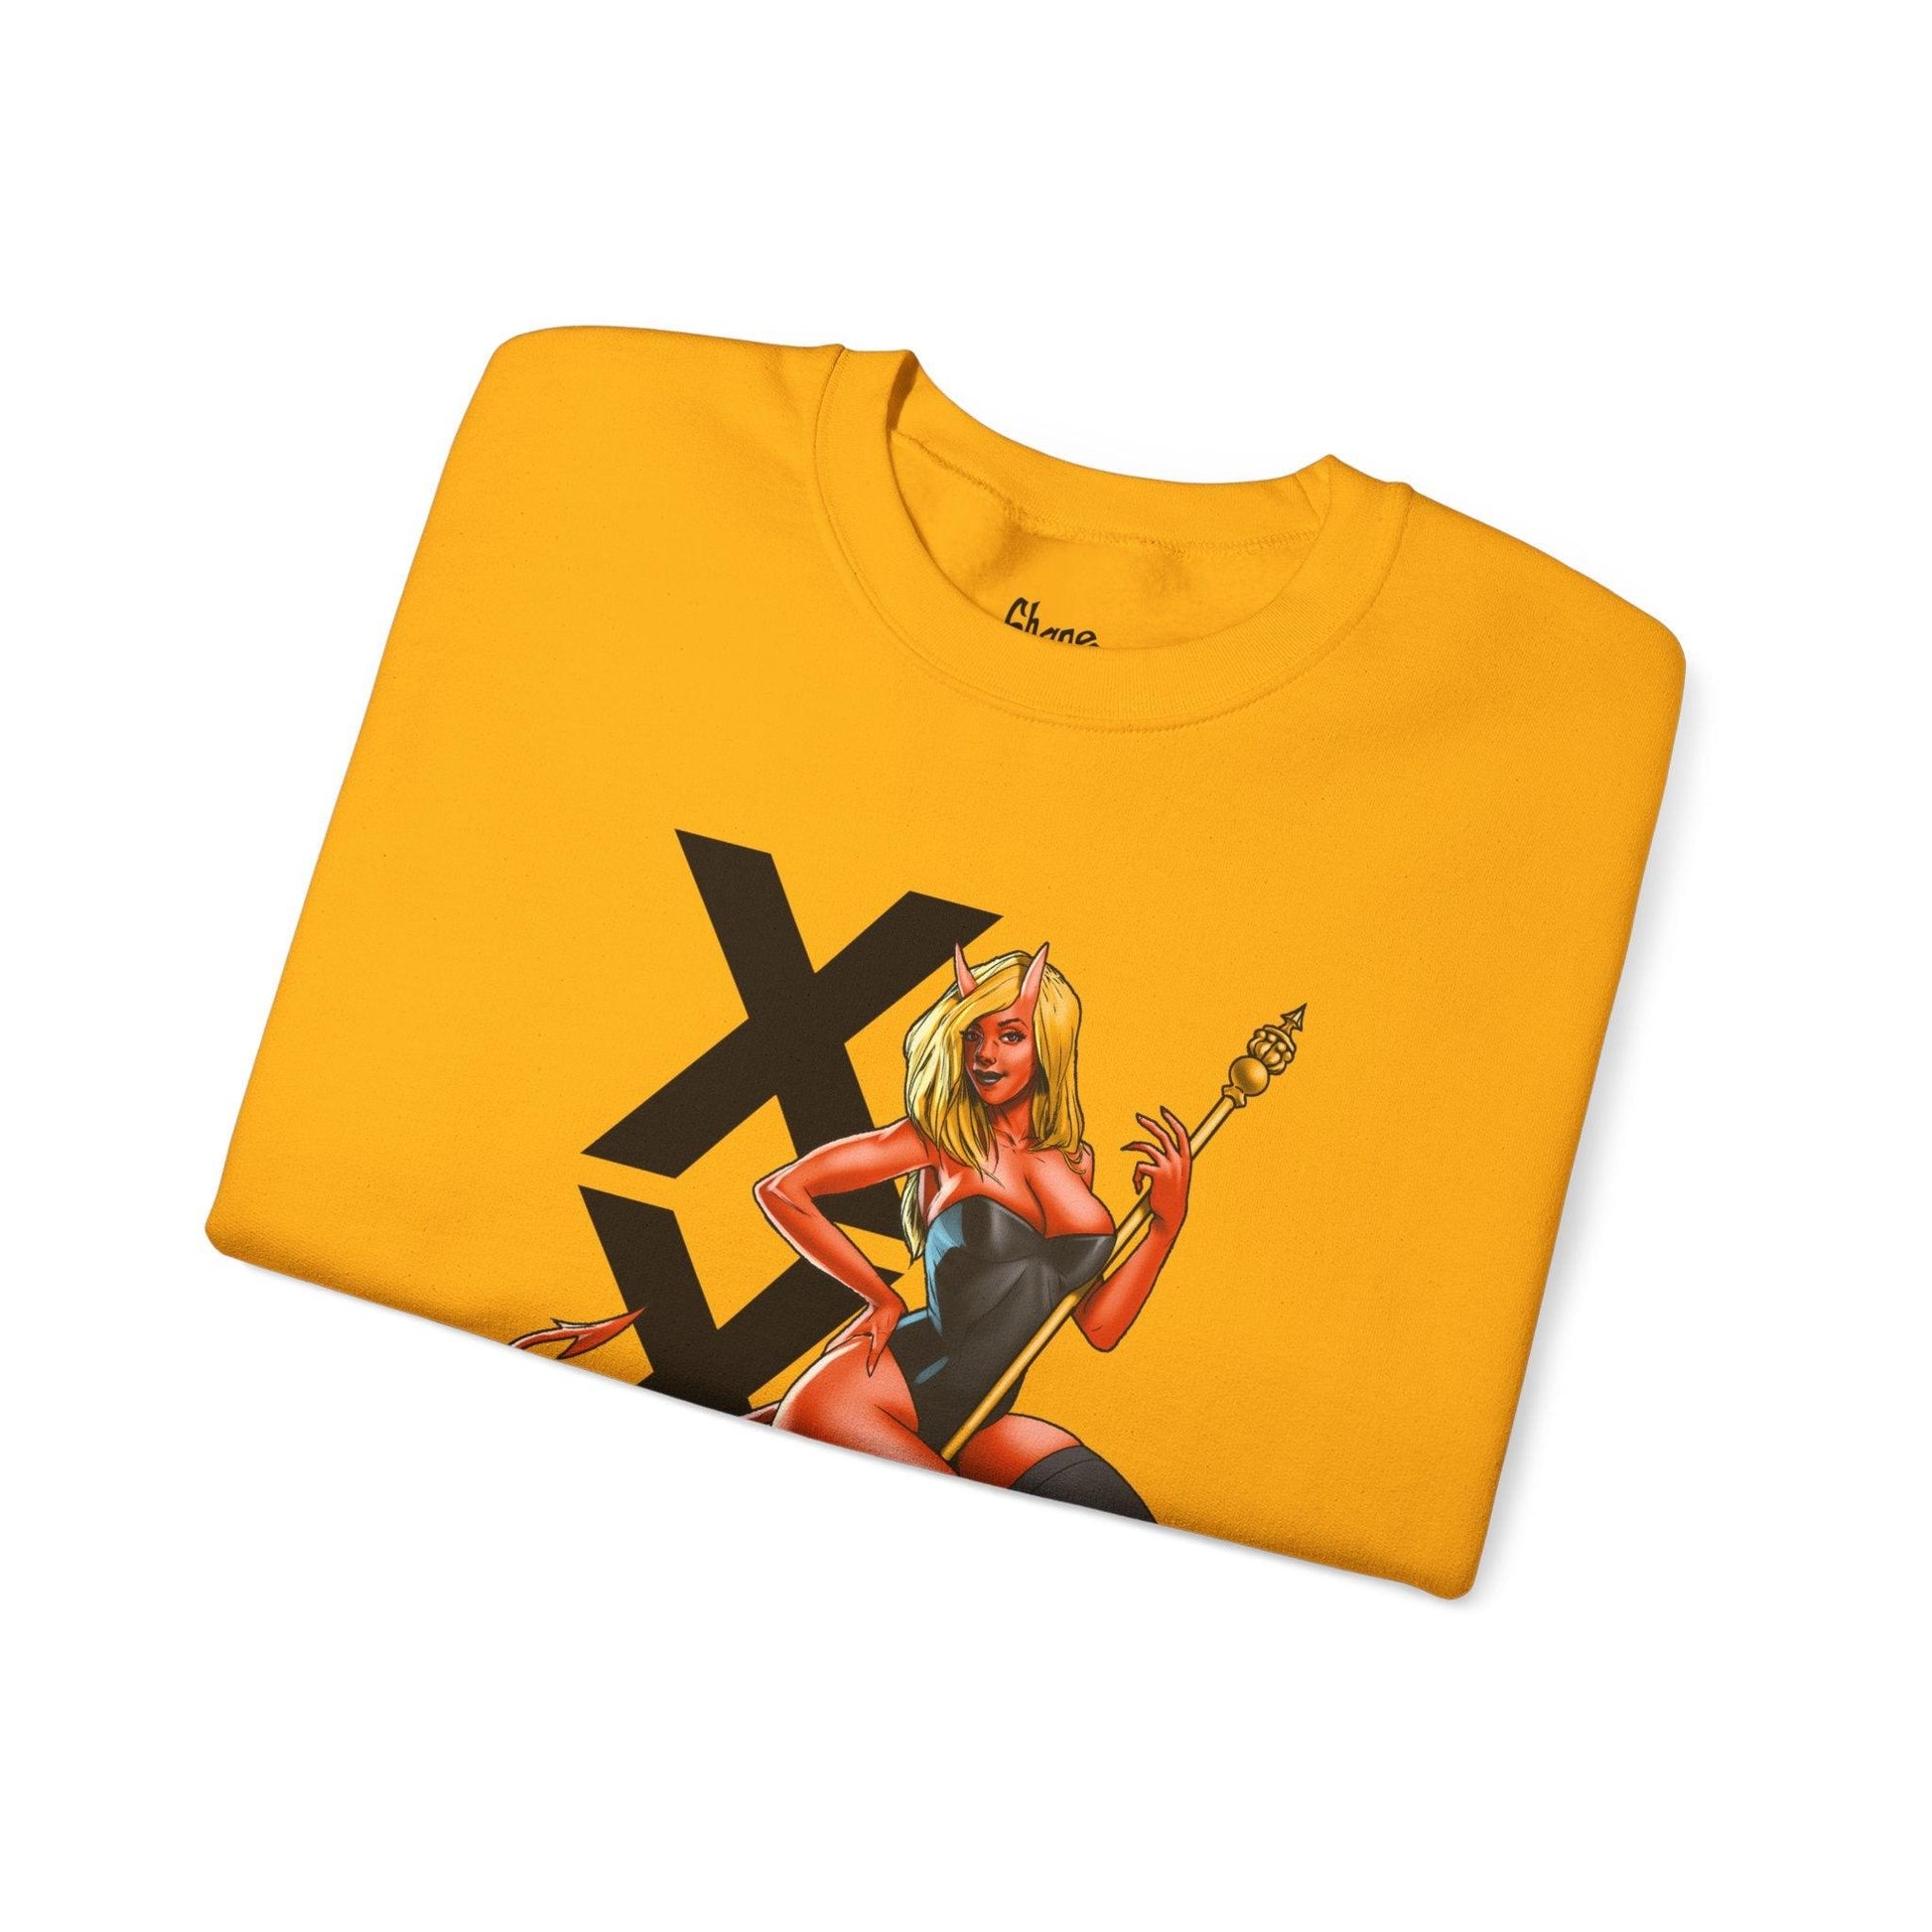 XXX - Unisex Heavy Blend Crewneck Sweatshirt - Shaneinvasion